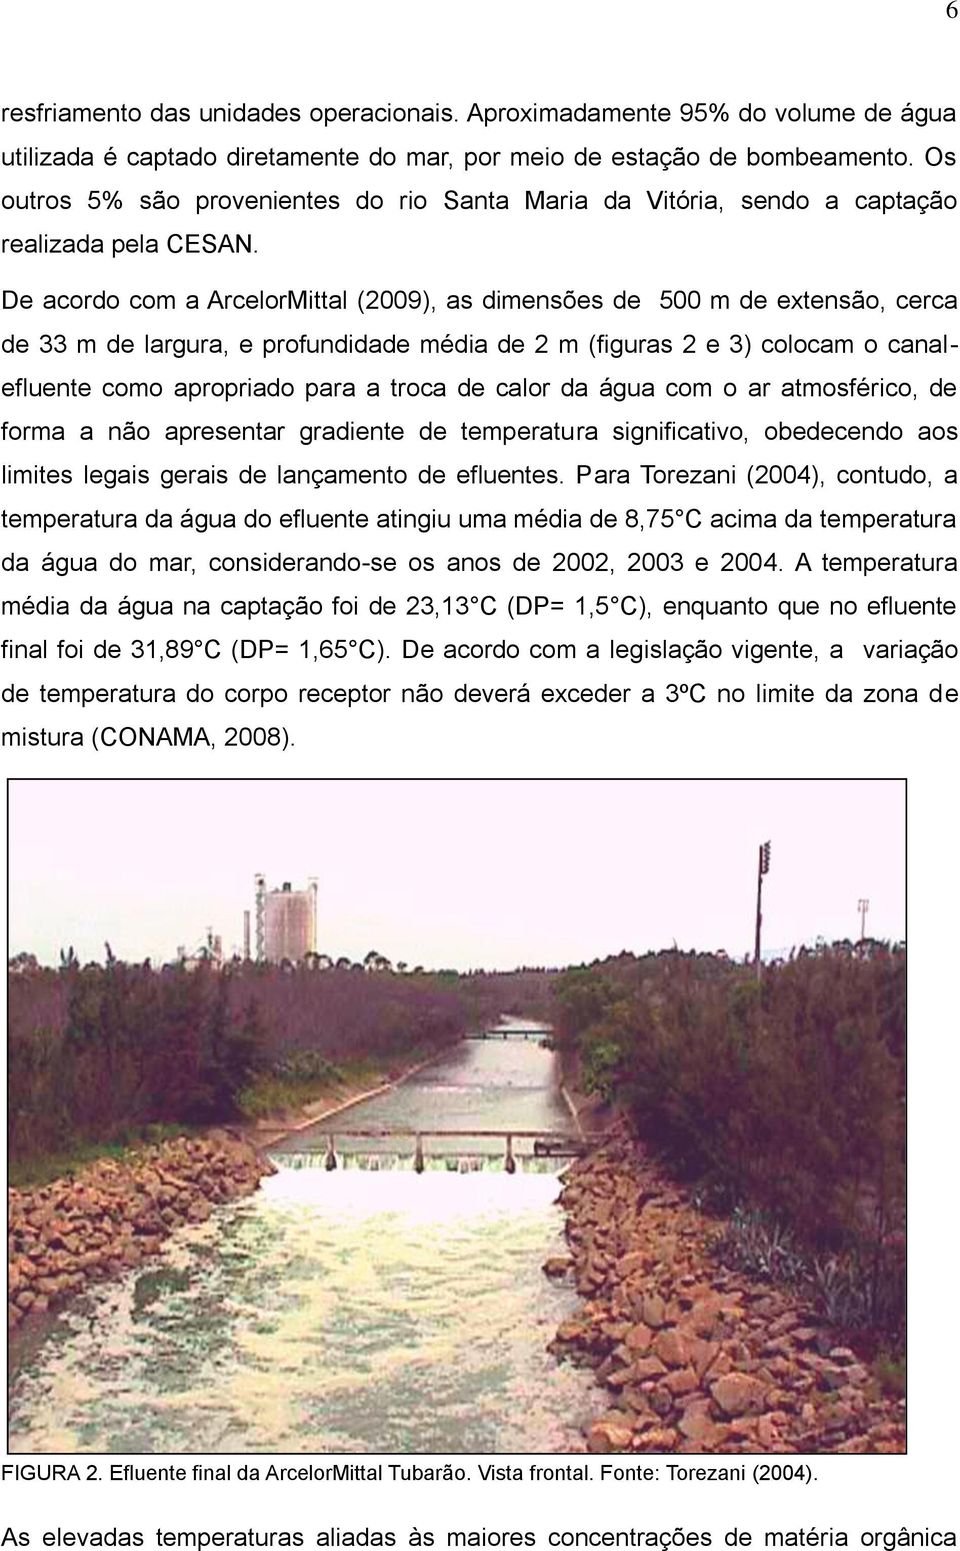 De acordo com a ArcelorMittal (2009), as dimensões de 500 m de extensão, cerca de 33 m de largura, e profundidade média de 2 m (figuras 2 e 3) colocam o canalefluente como apropriado para a troca de